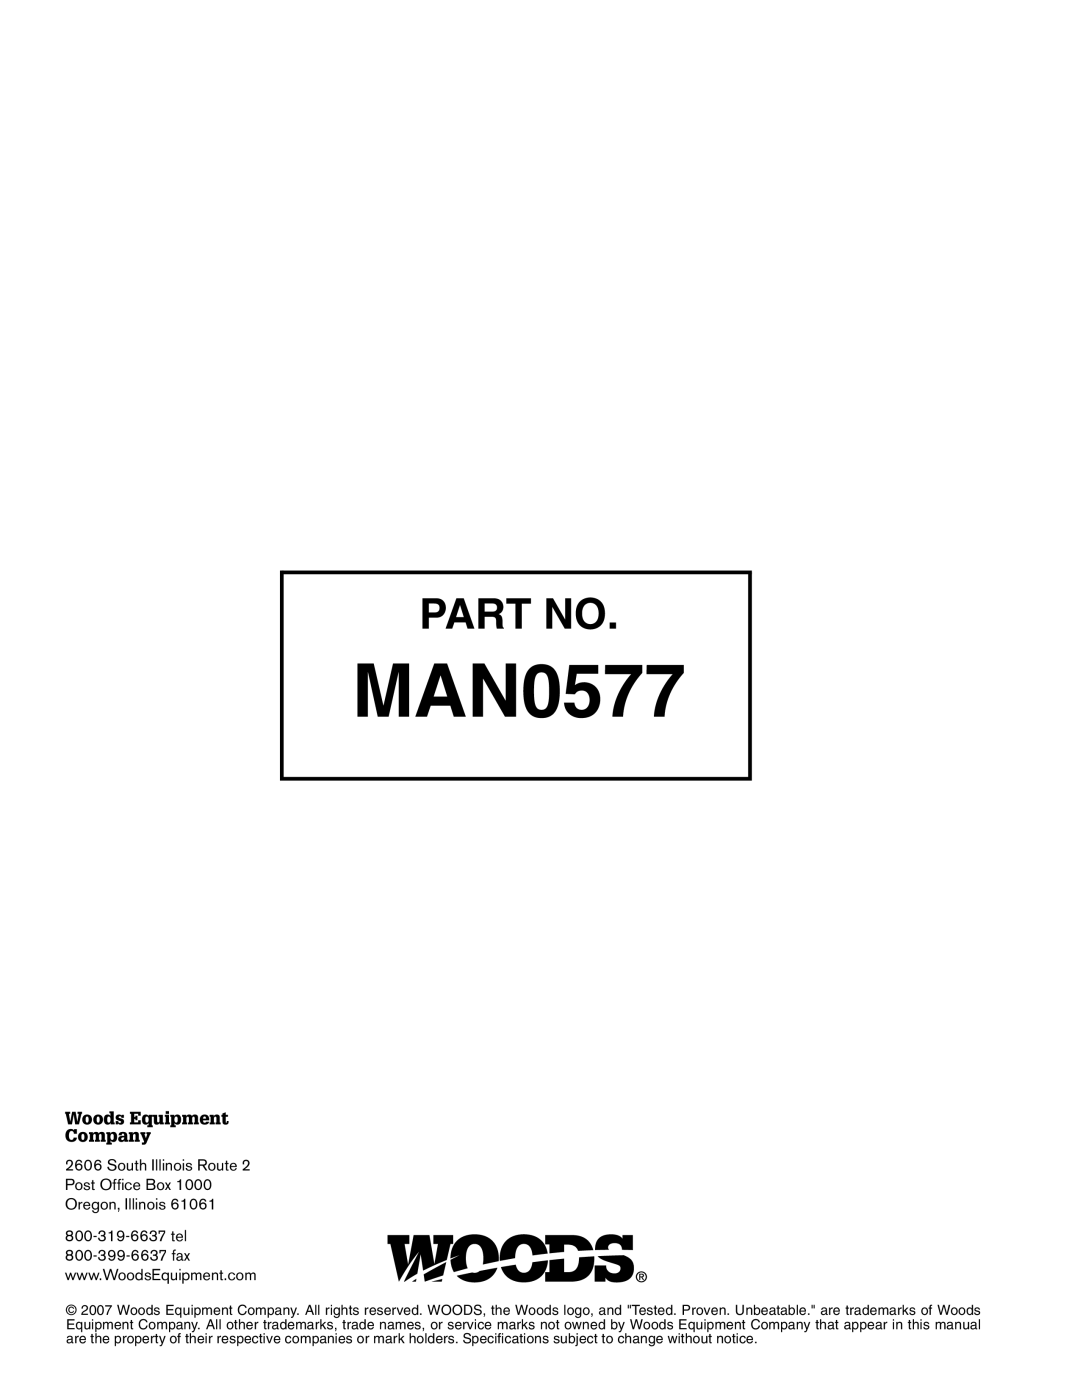 Woods Equipment TS1680Q manual MAN0577 